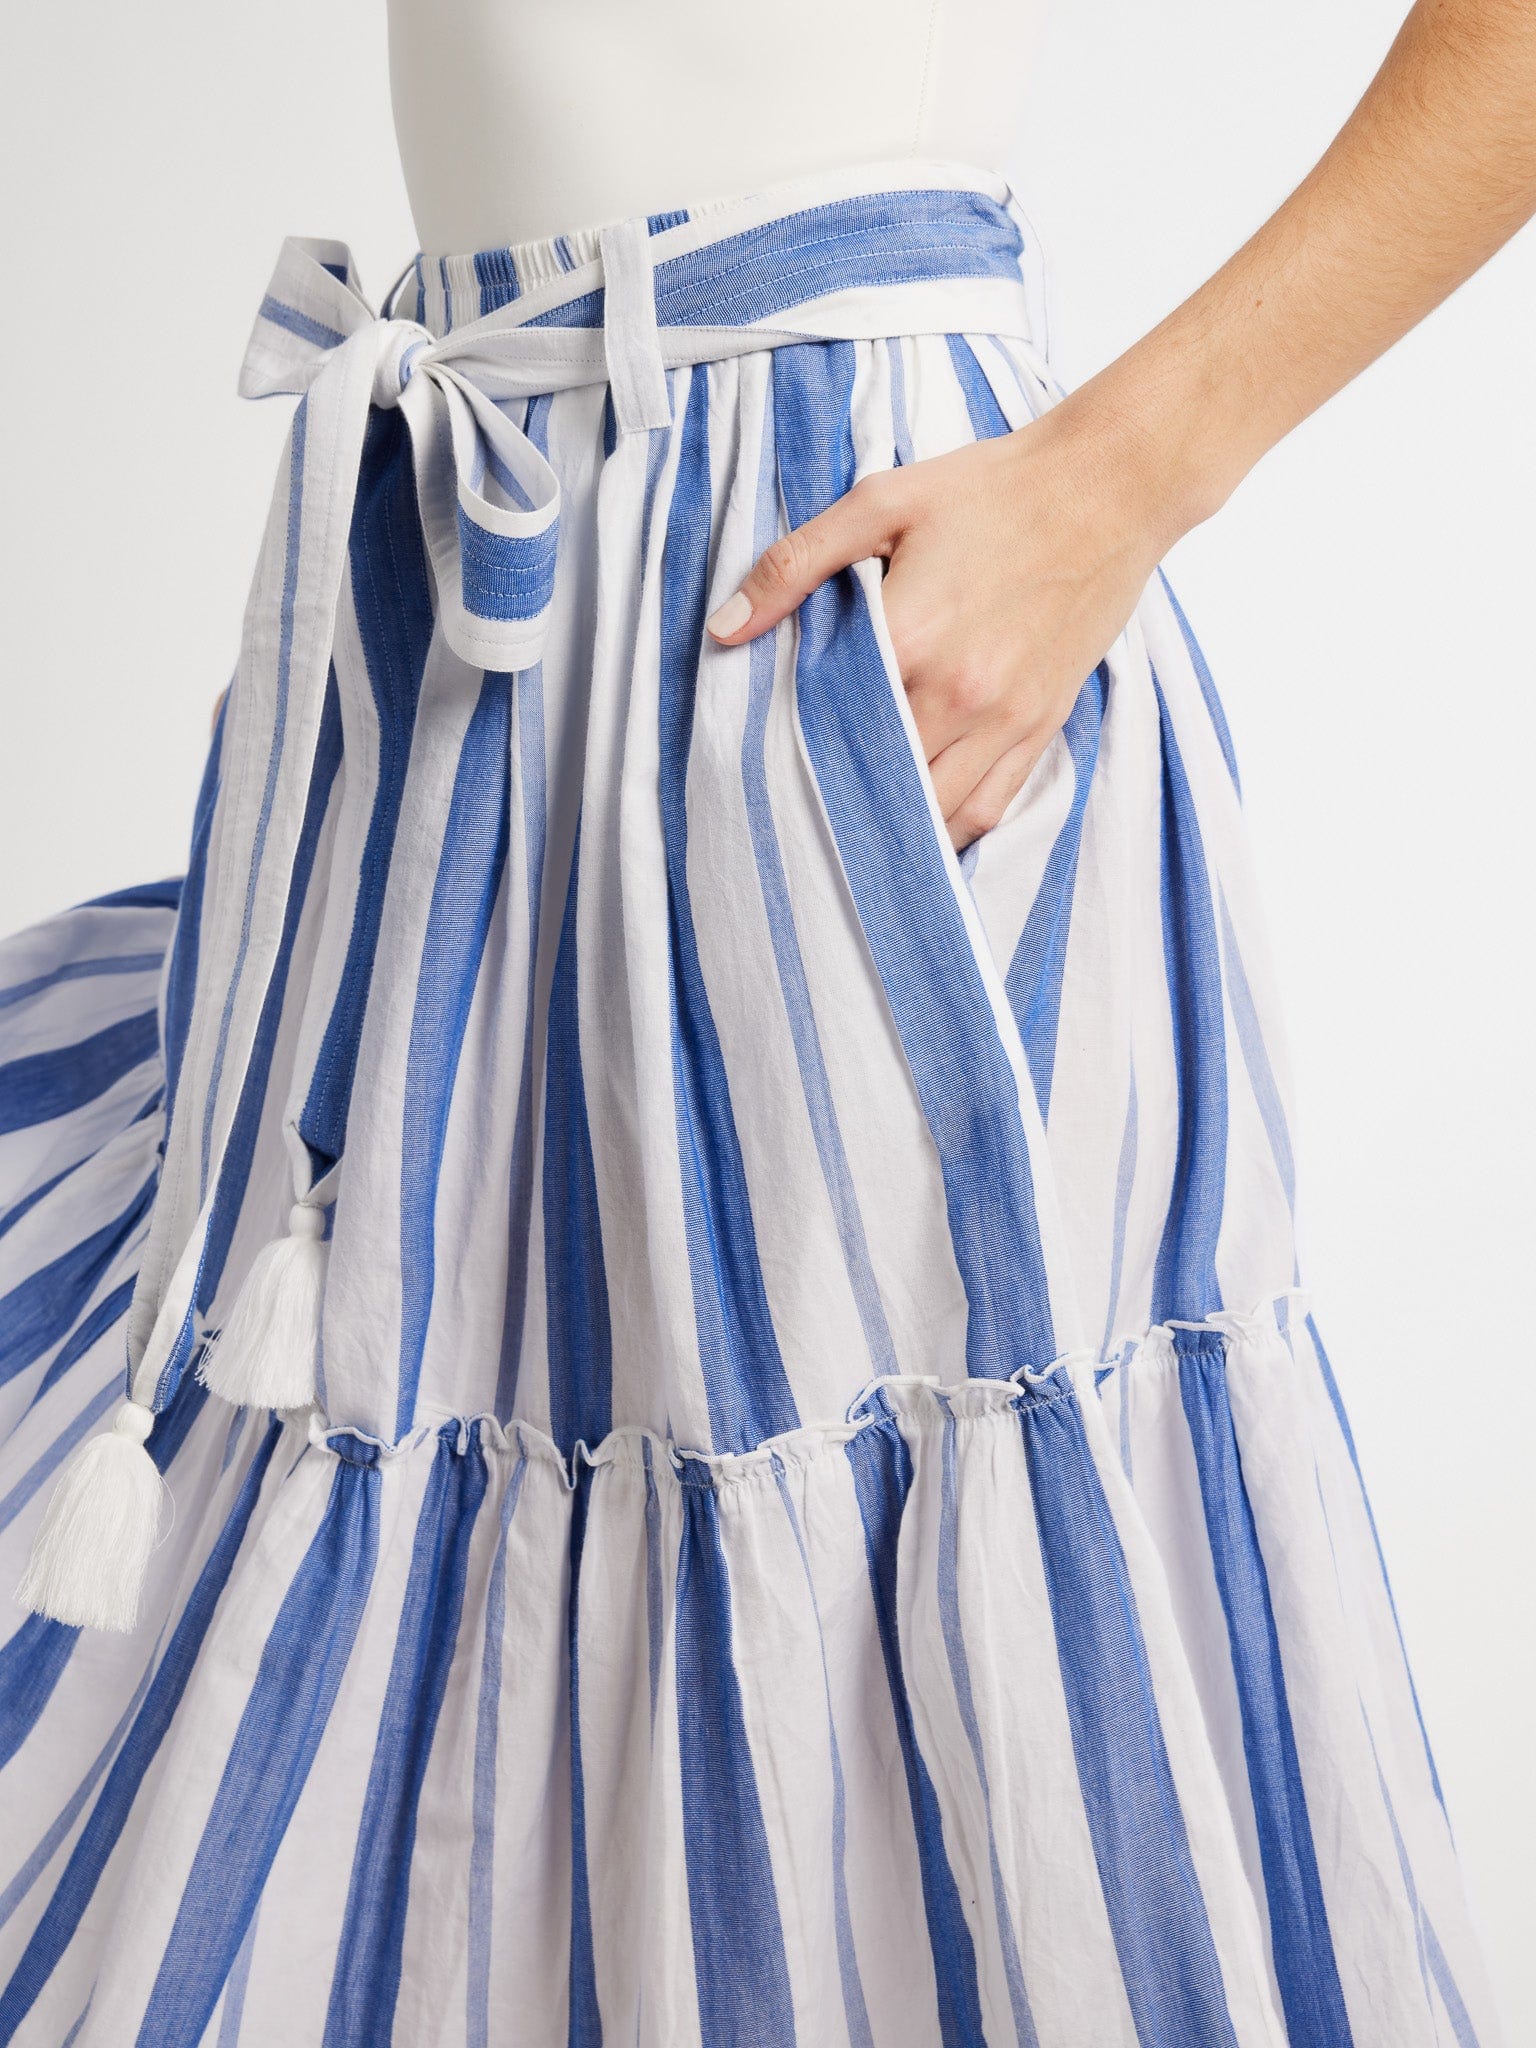 MILLE Clothing Françoise Skirt in Nantucket Stripe